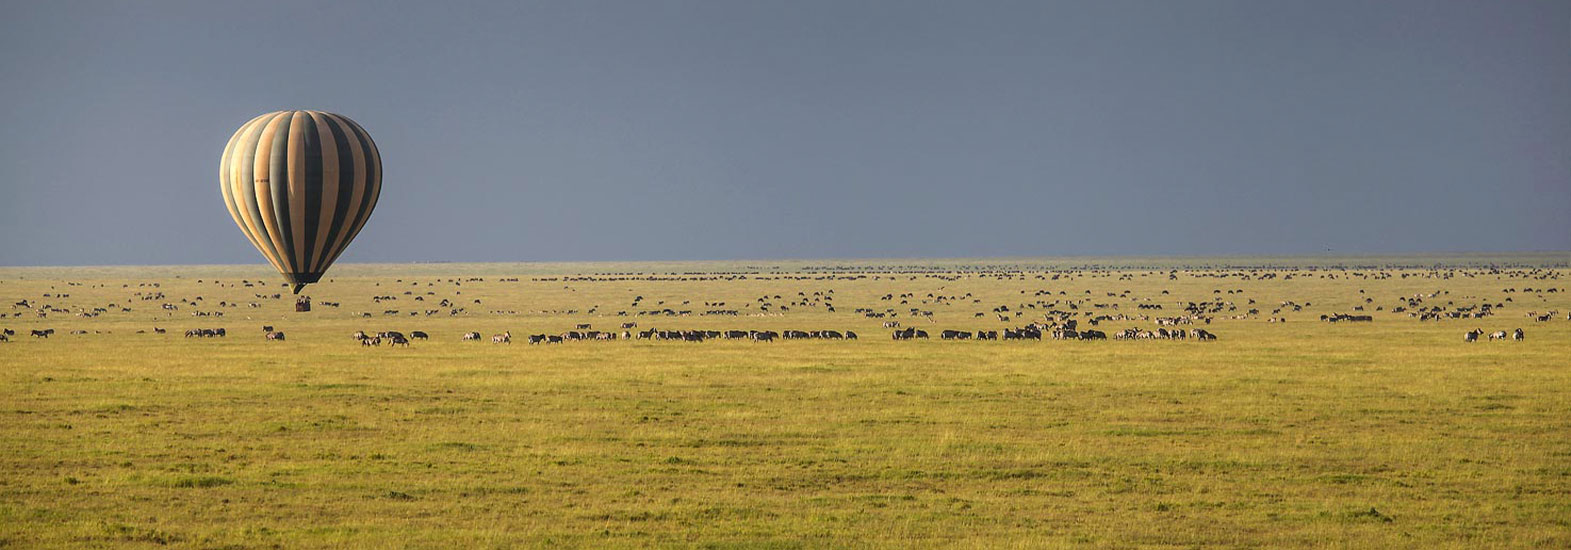 Soul of Tanzania Safari